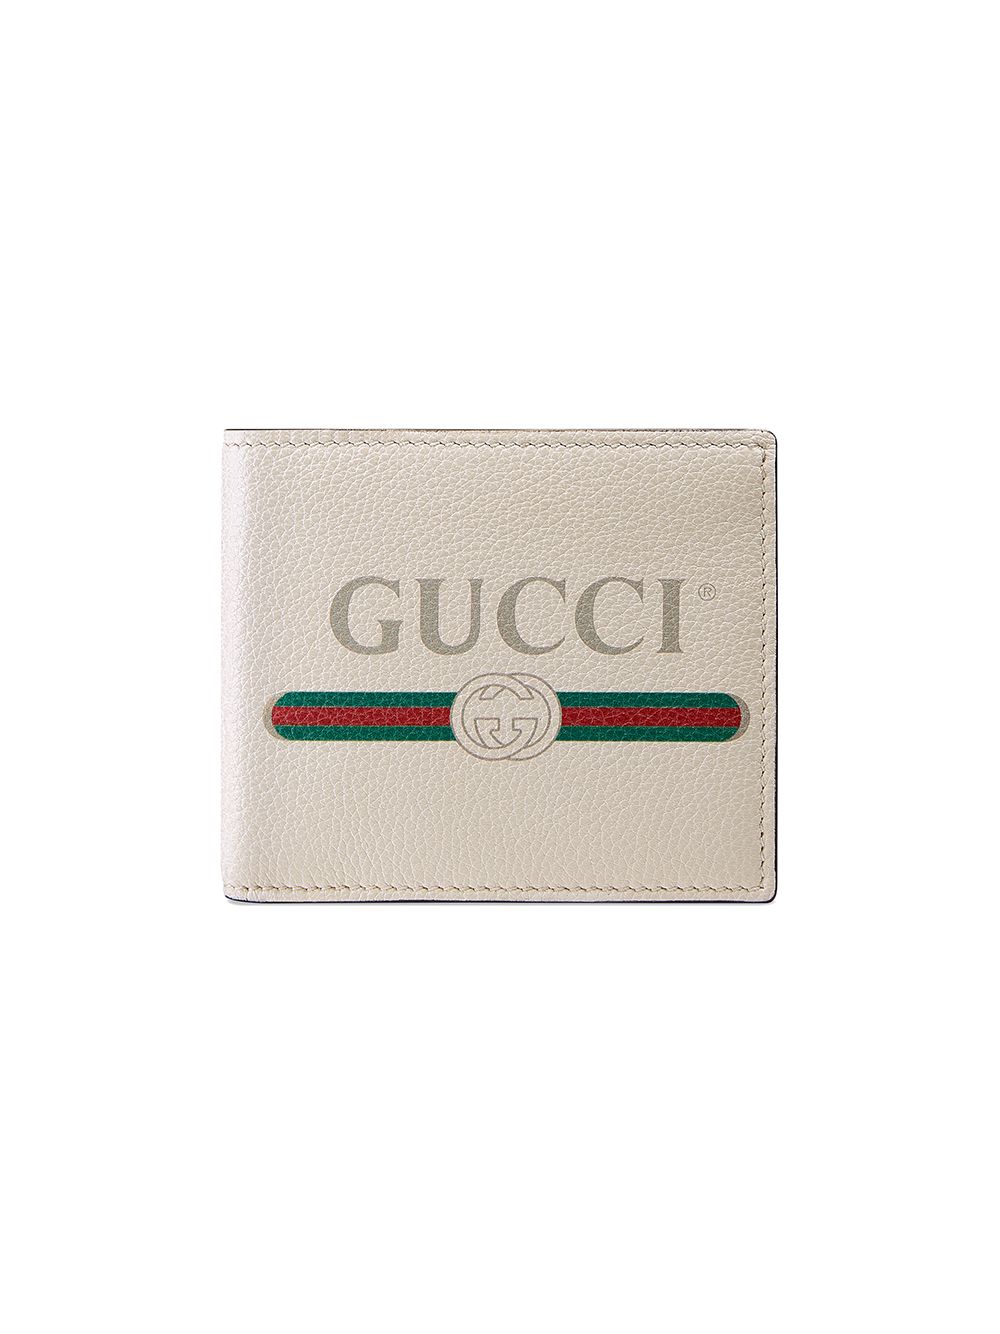 gucci wallet farfetch